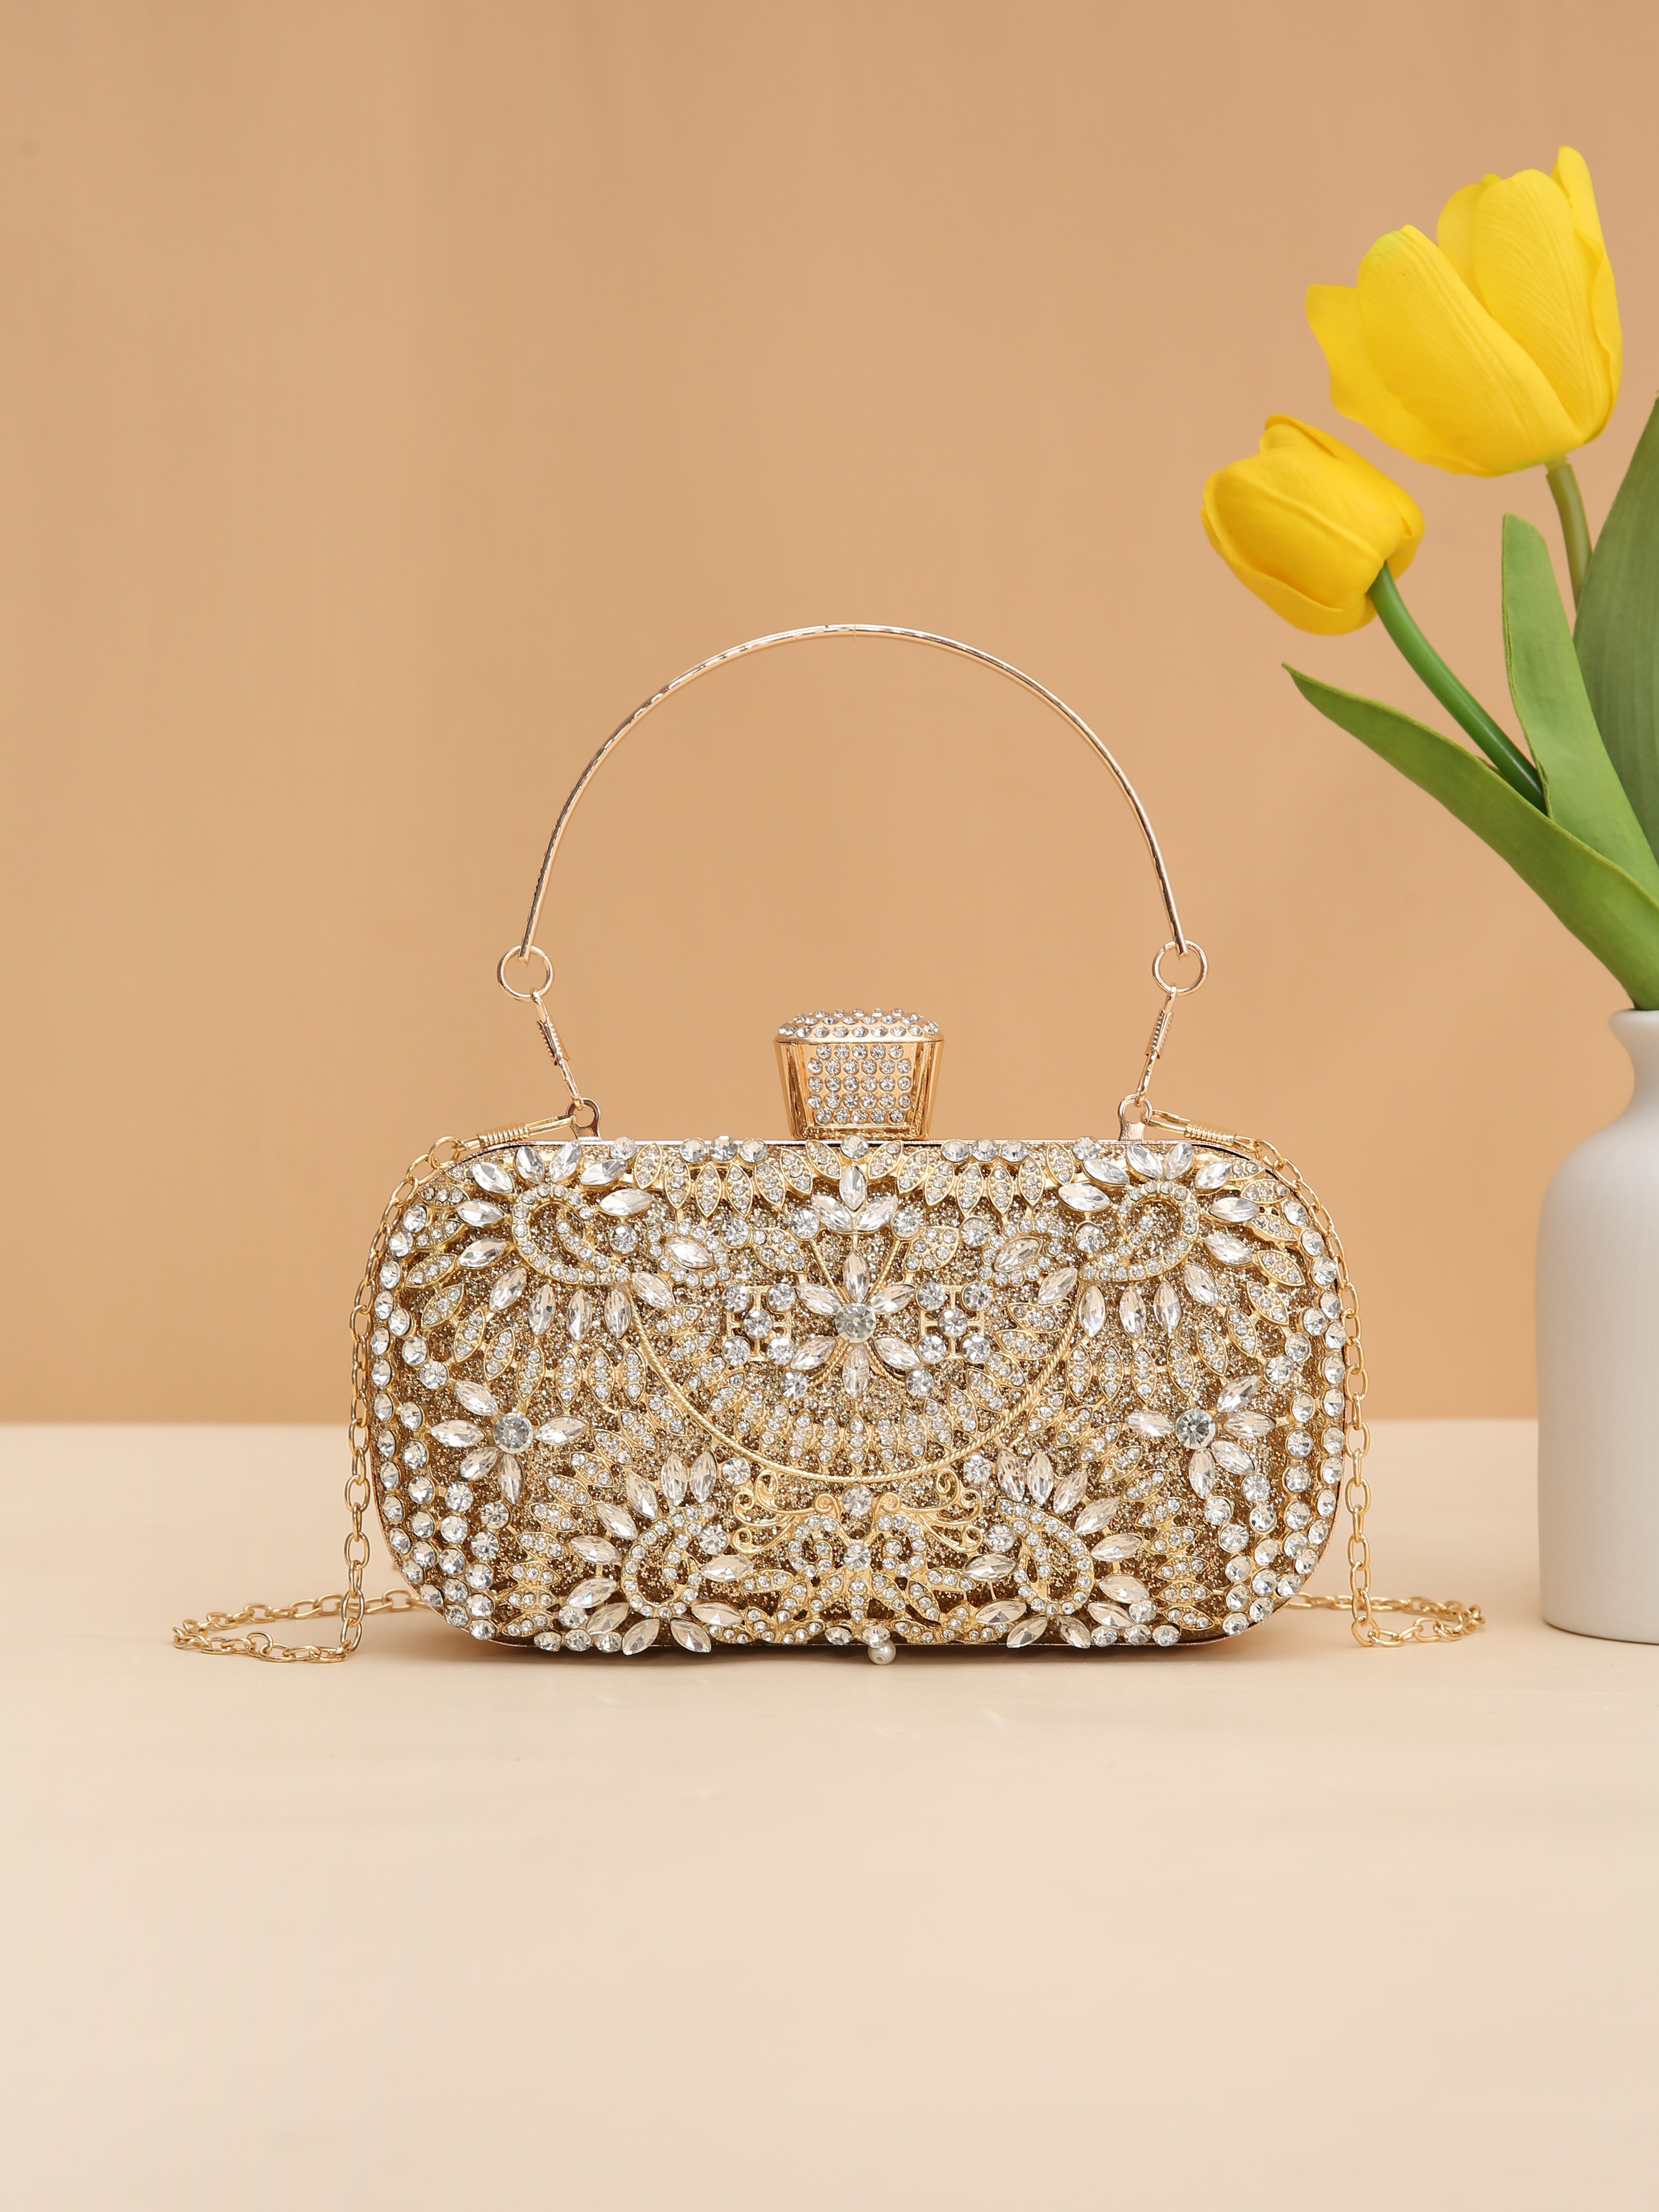 Bridal Clutch Purse Bag Luxury Wedding, Small Gold Handbag